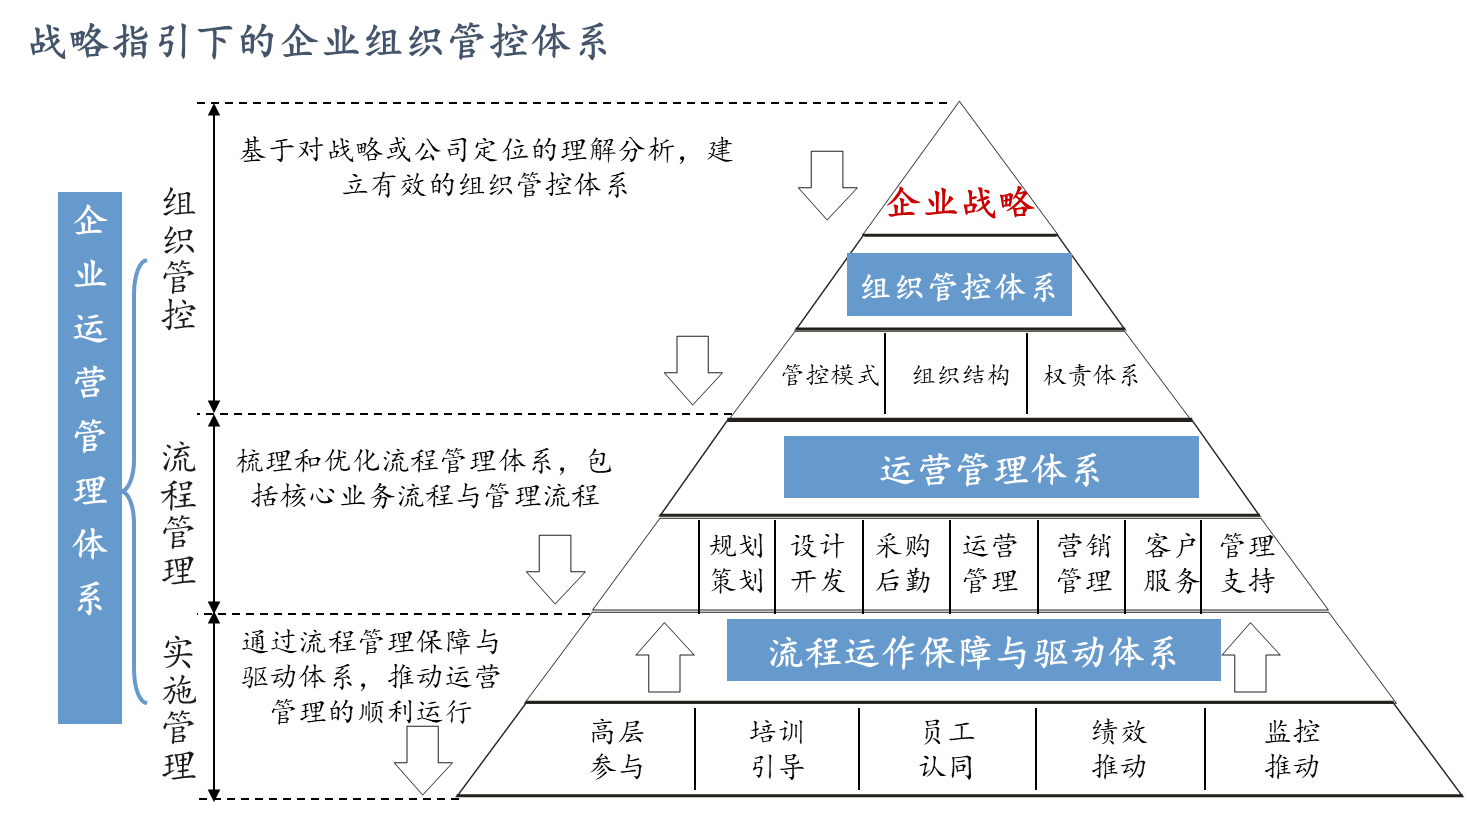 图1 战略指引下的企业组织管控体系